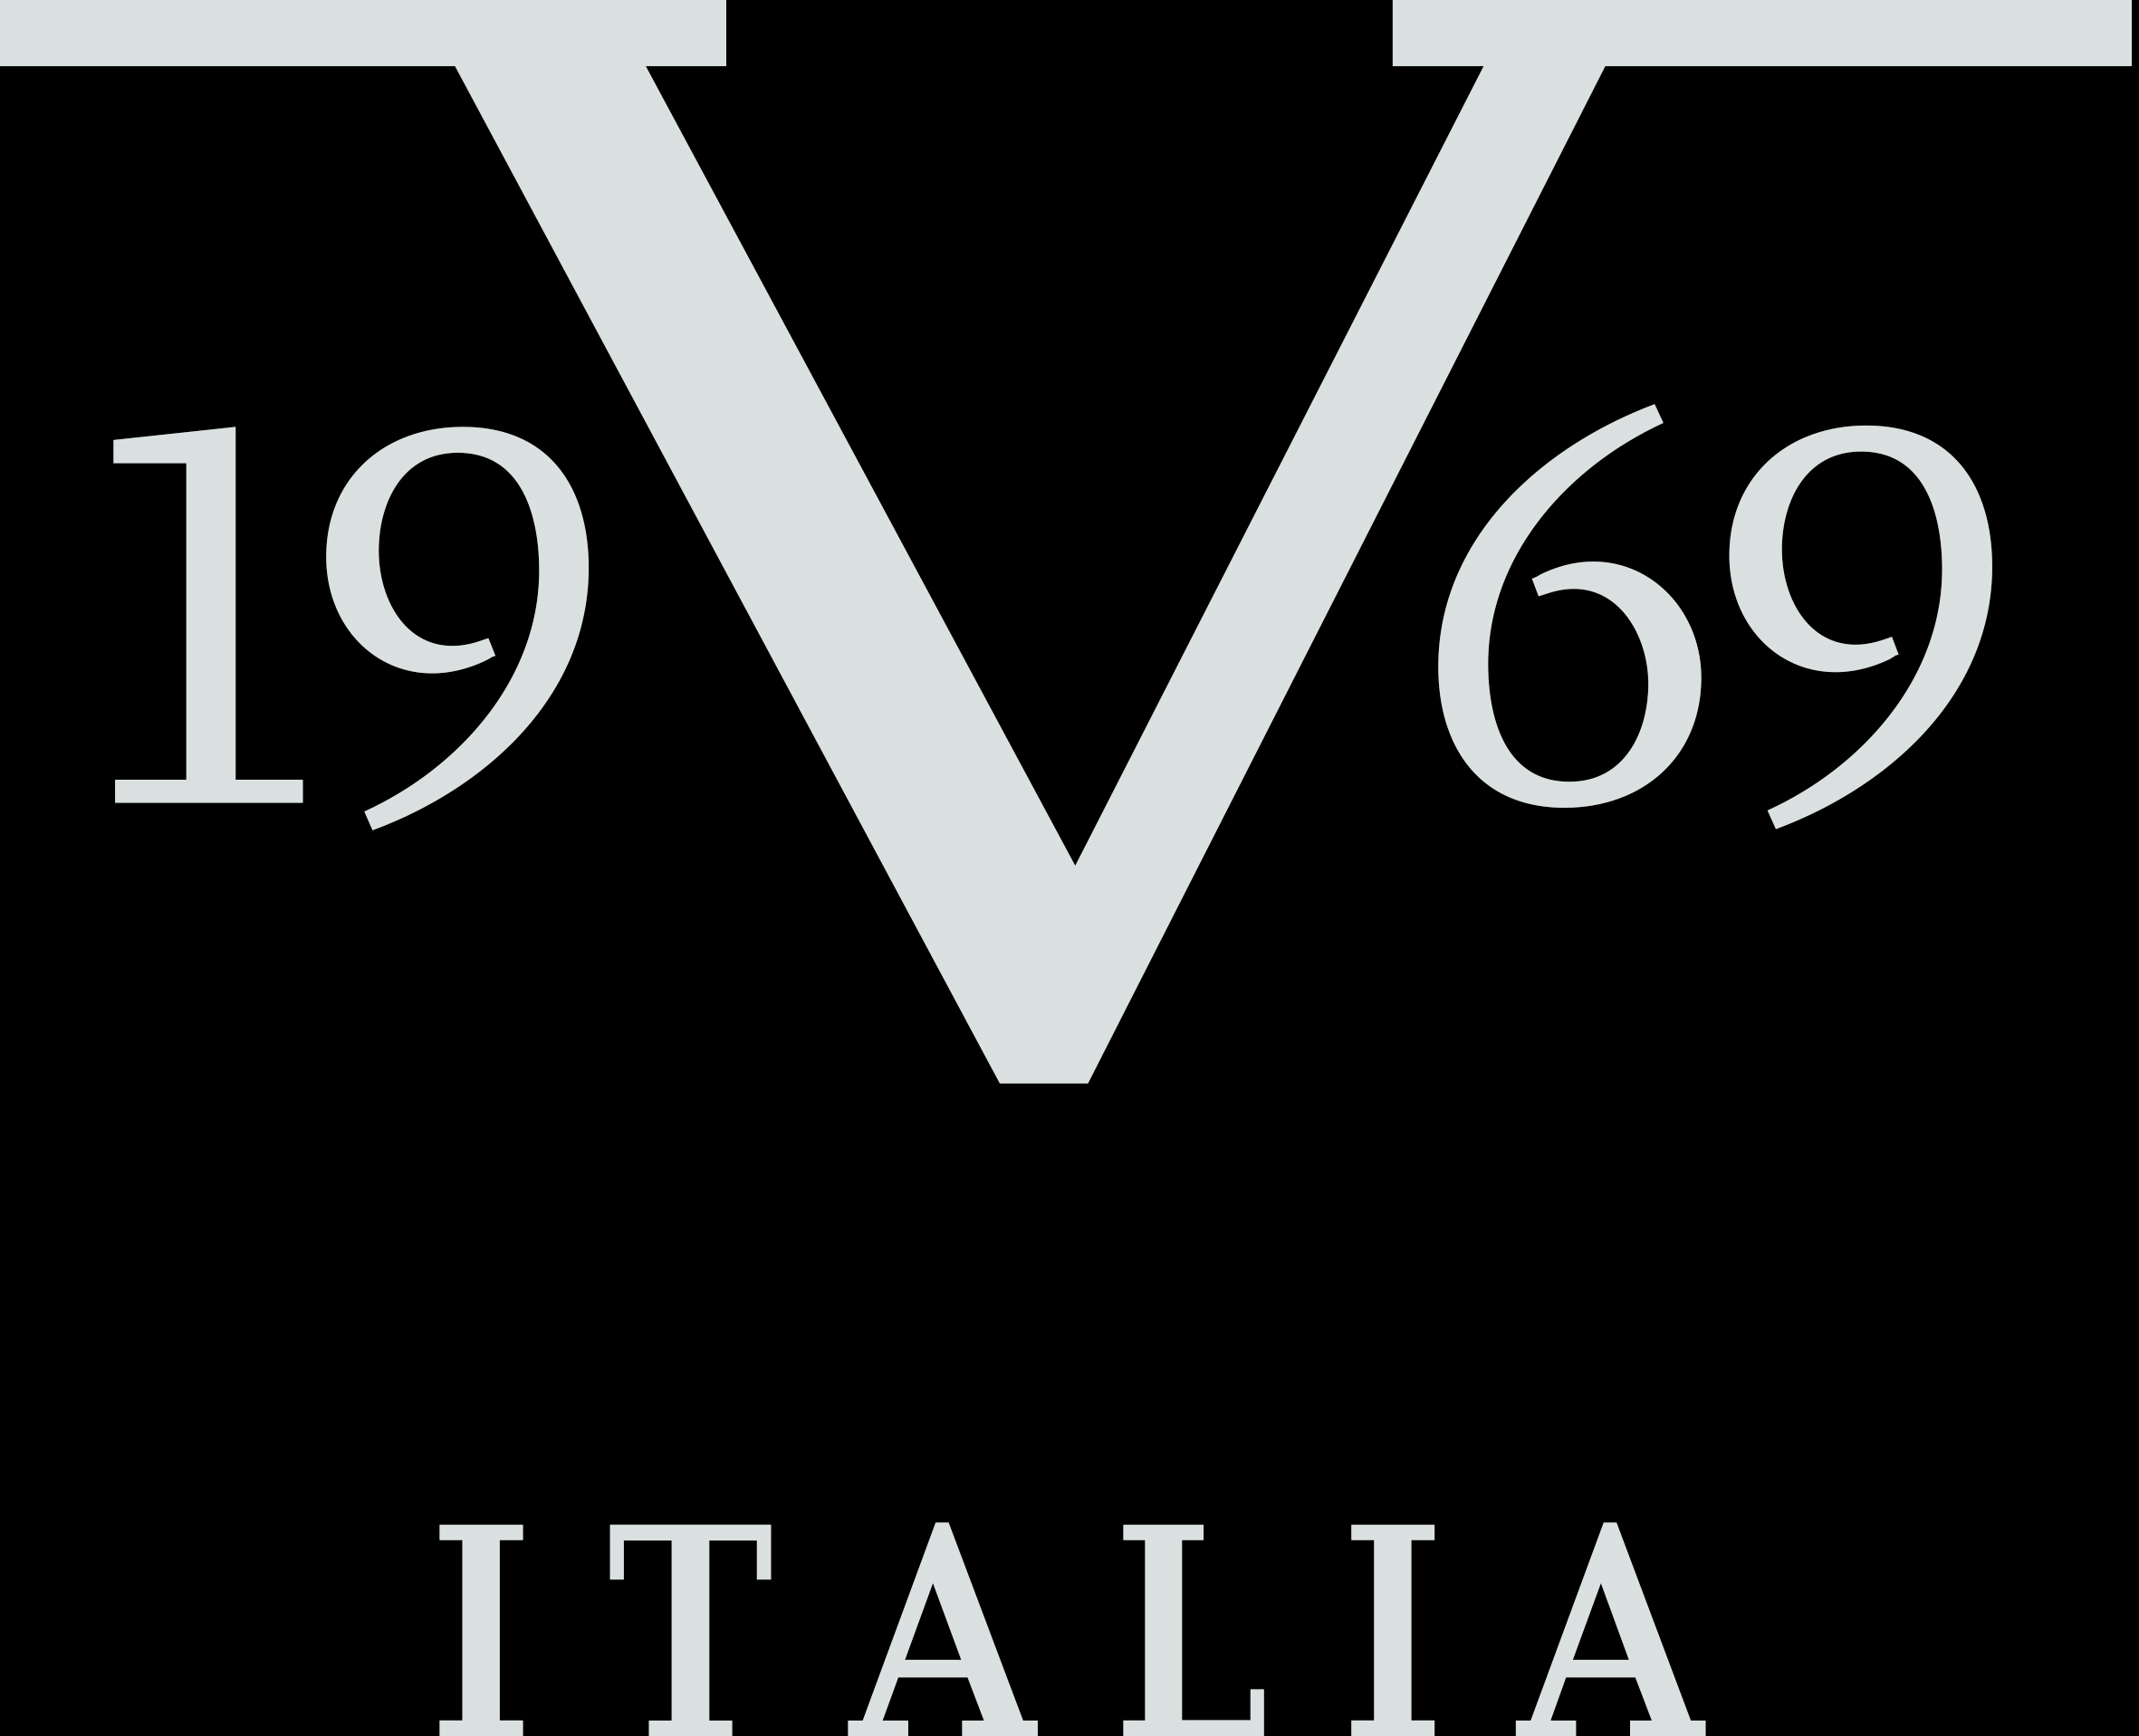 19v69 by Versace Abbigliamento Sportivo SRL Milano